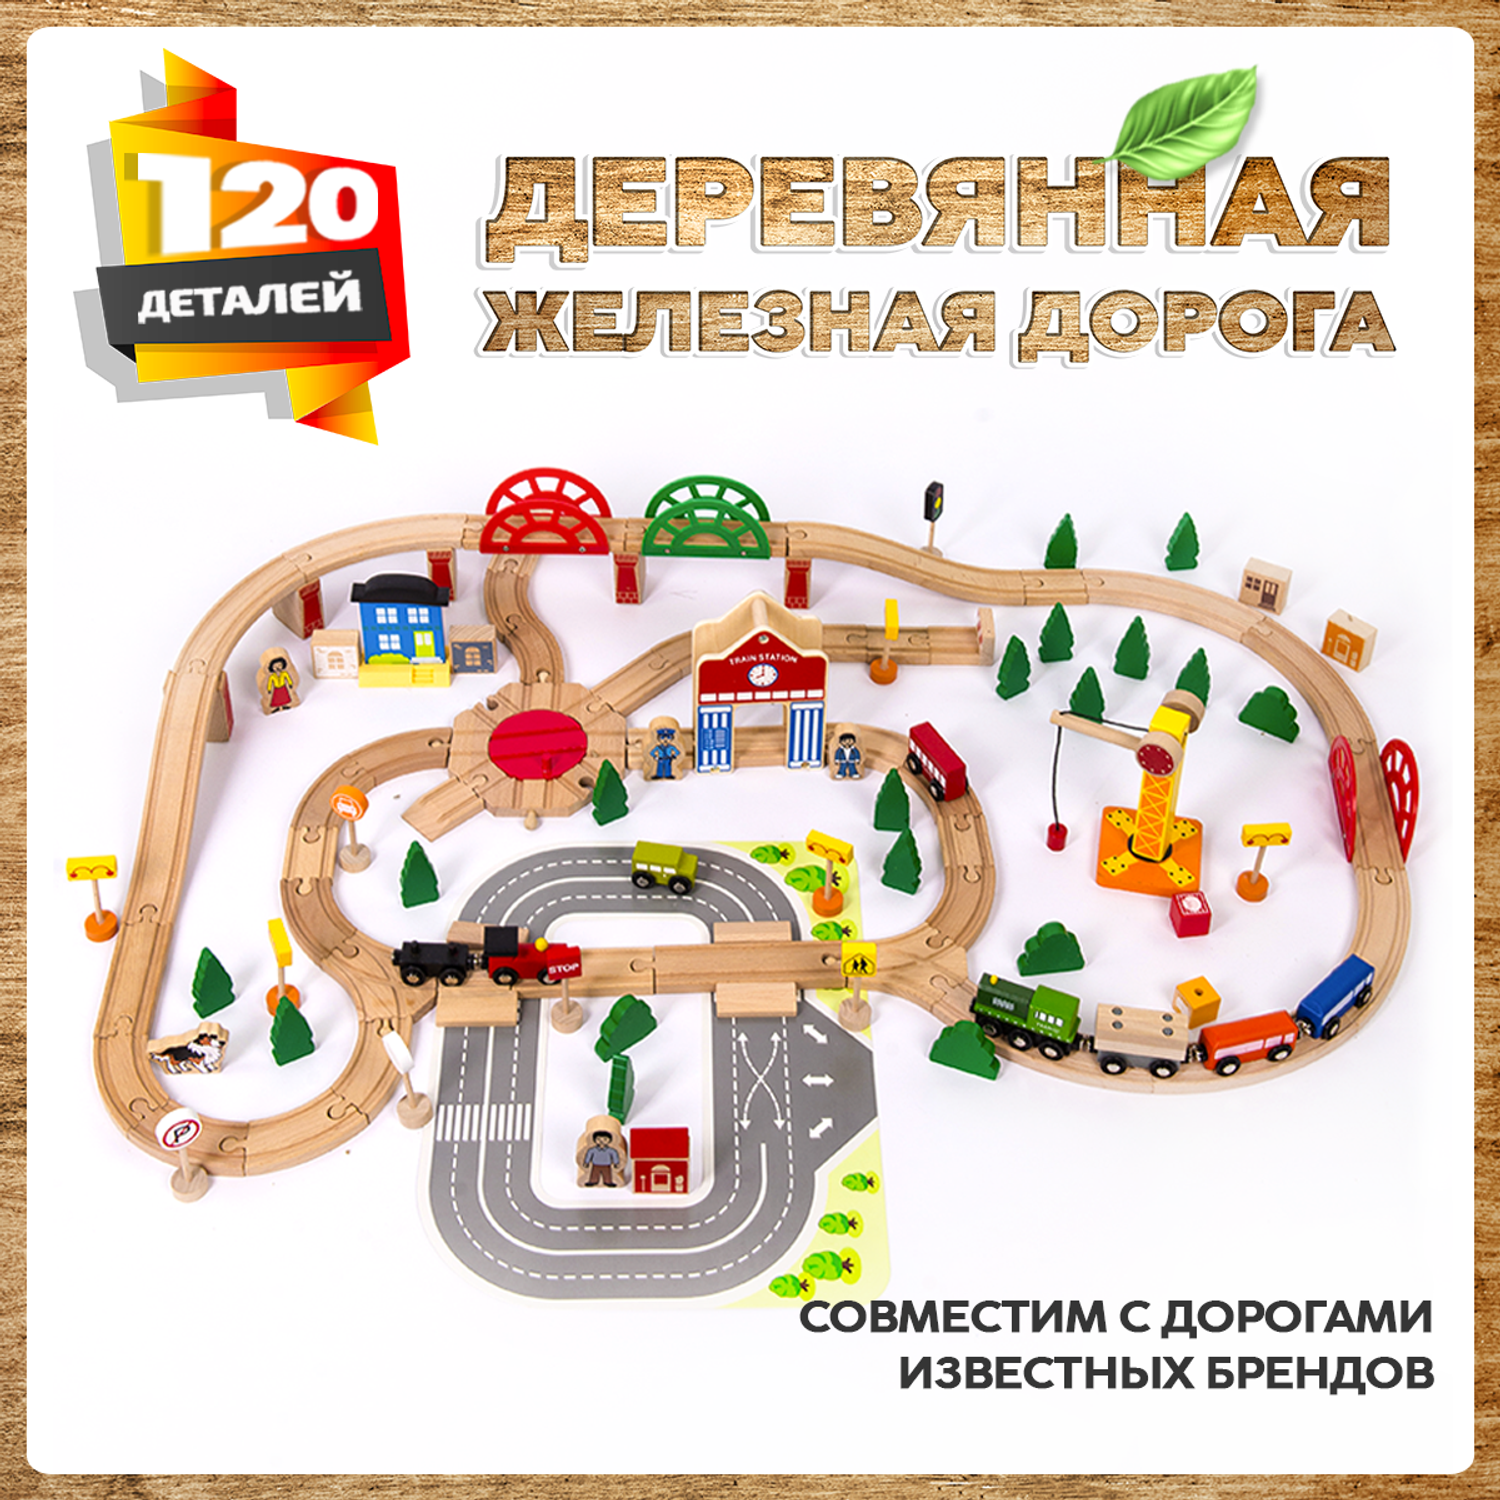 Деревянная железная дорога А.Паровозиков 120 деталей развивающая АП-004/ПЛ-TQ-2054-120 - фото 1